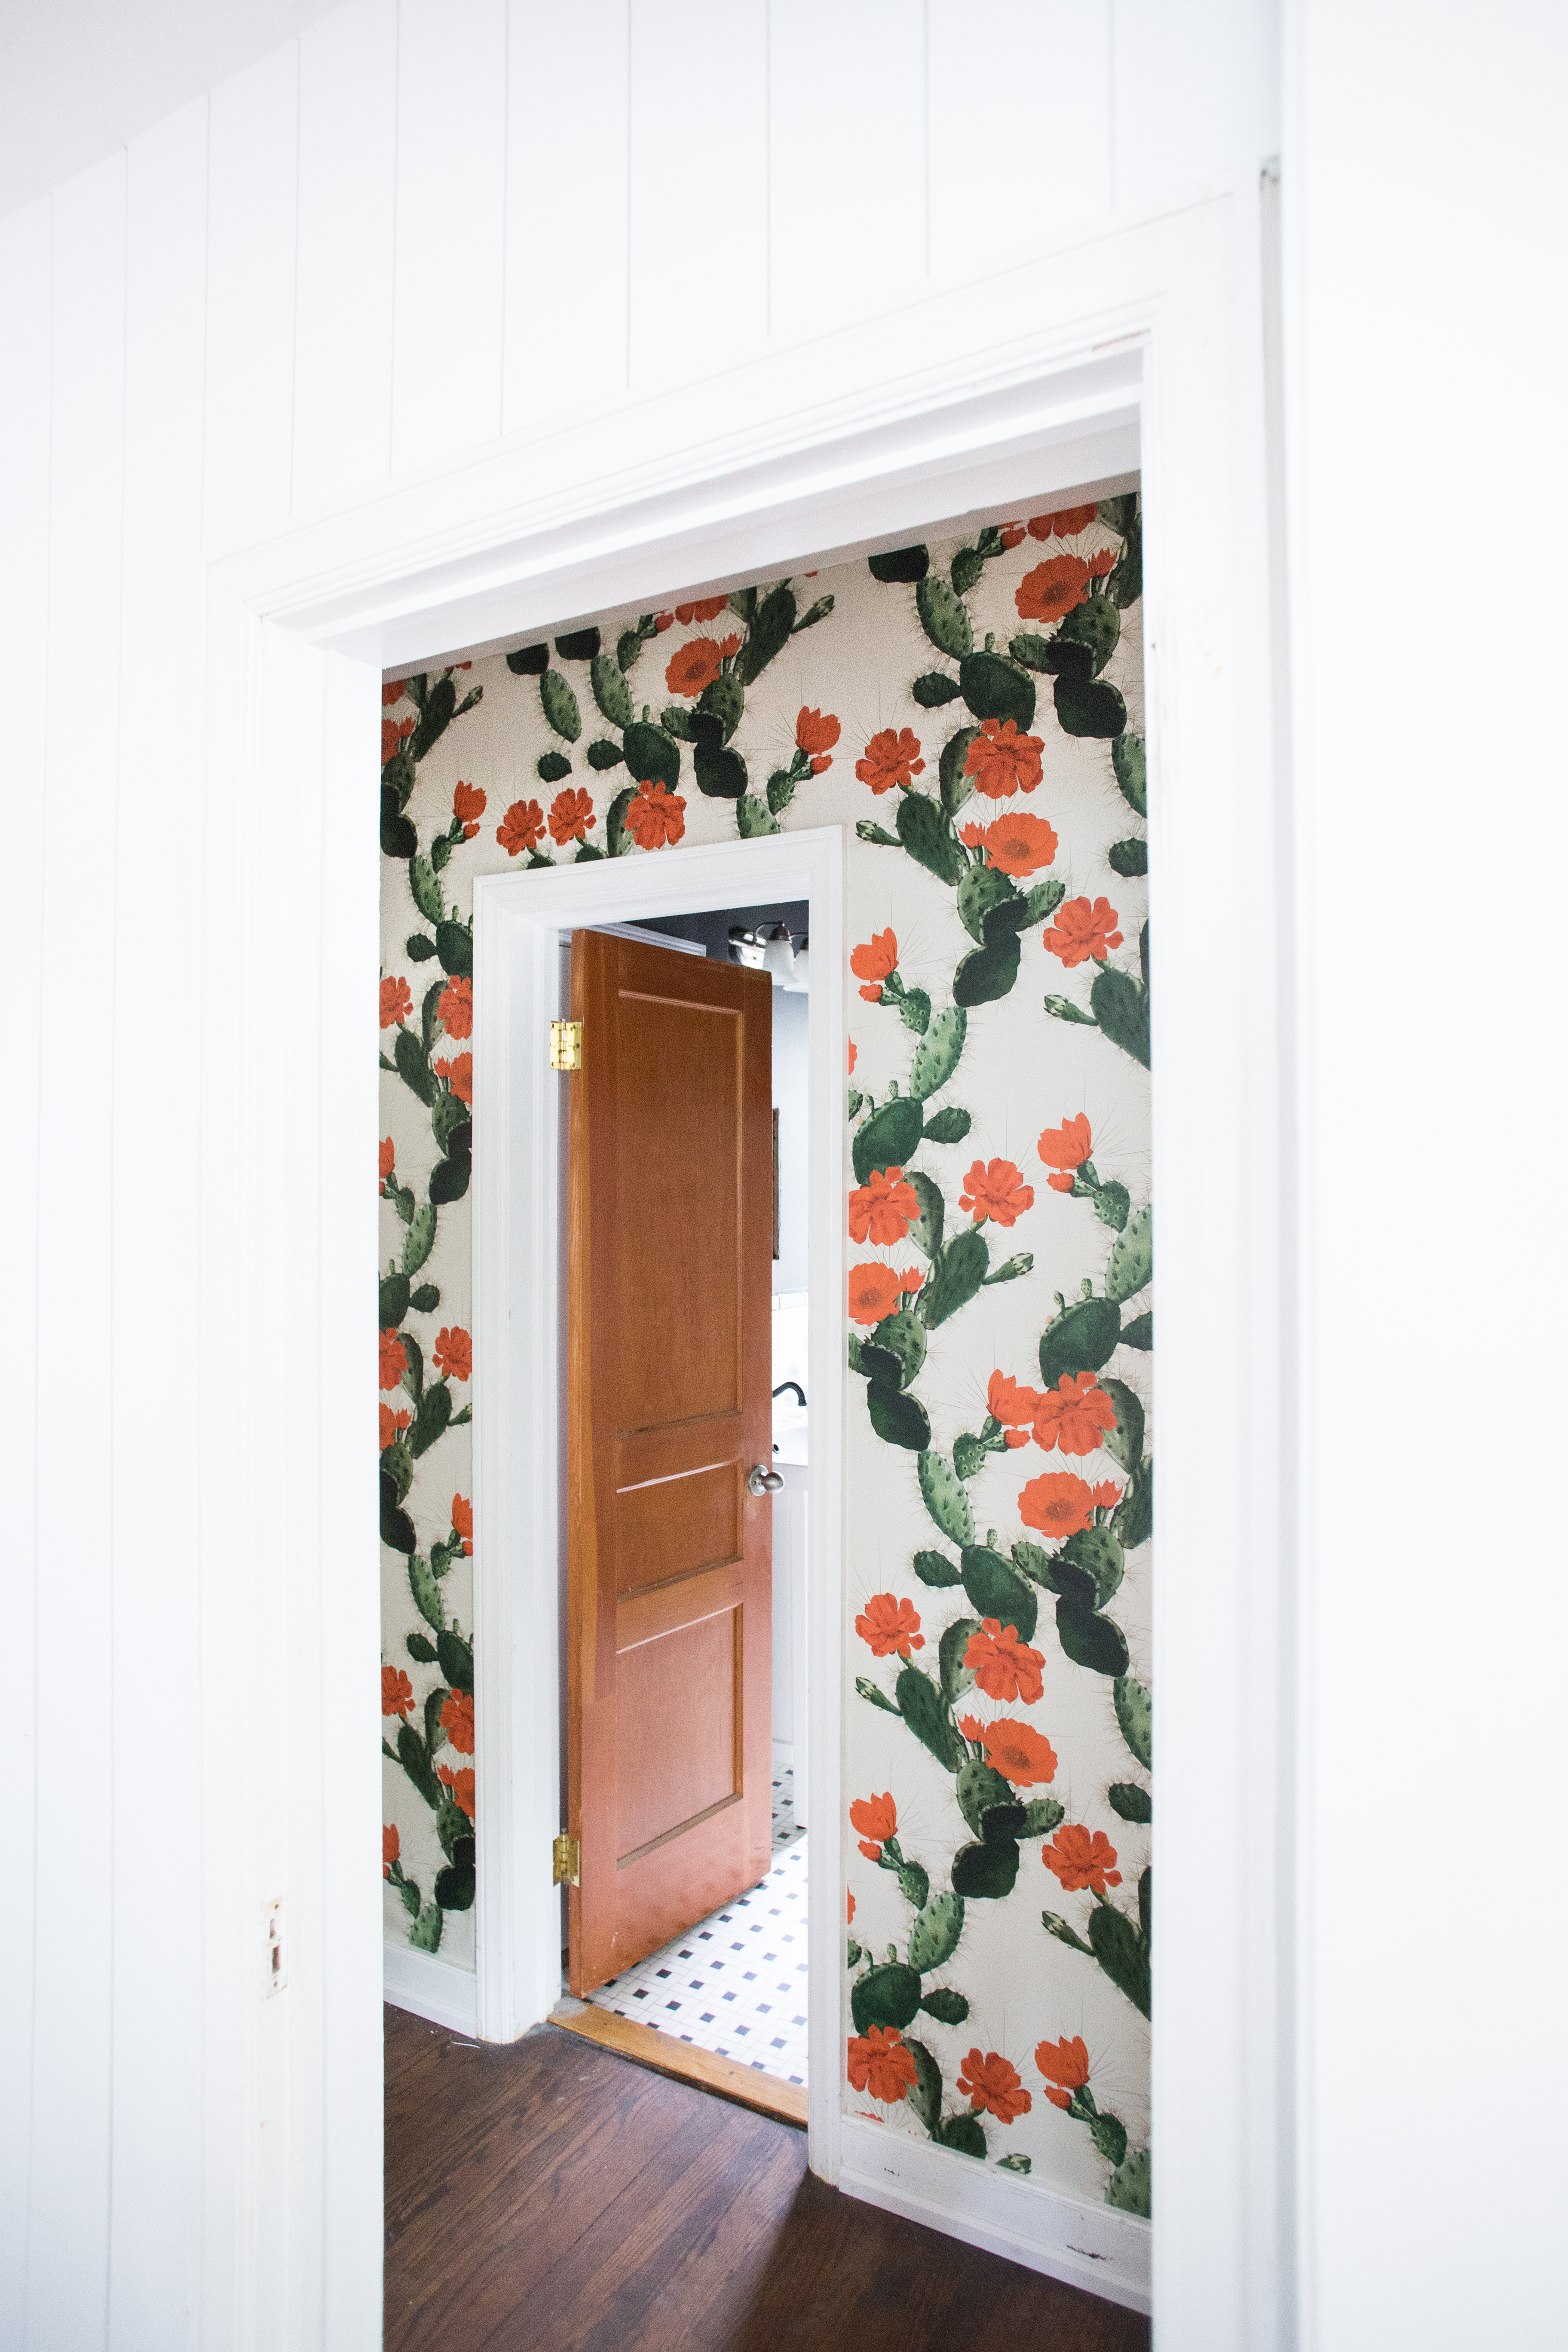 cactus wallpaper,door,wall,room,leaf,window